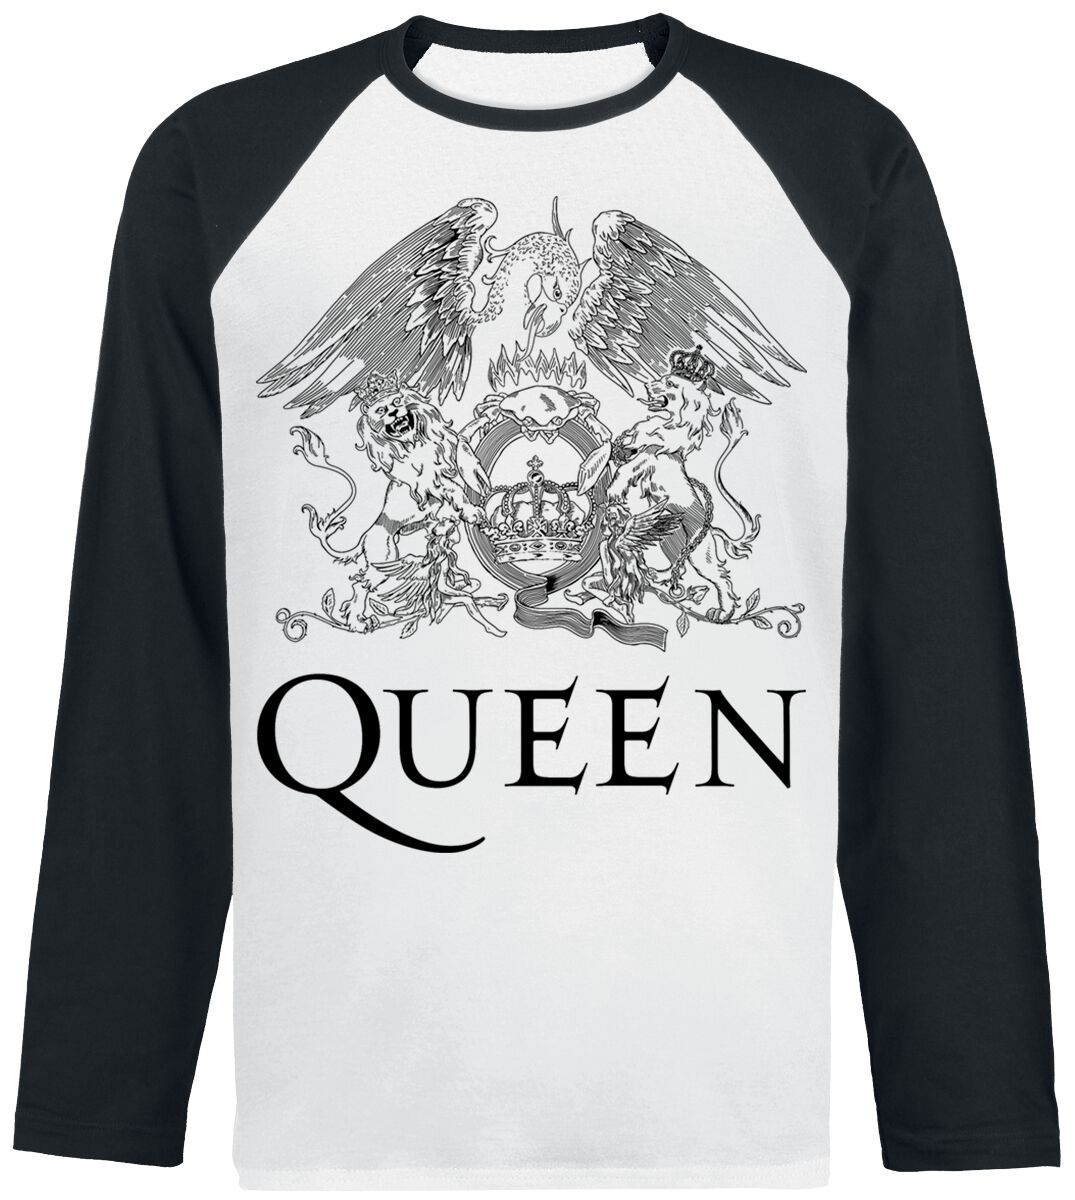 Queen Langarmshirt - Crest Vintage - S bis XXL - für Männer - Größe XL - weiß/schwarz  - Lizenziertes Merchandise!